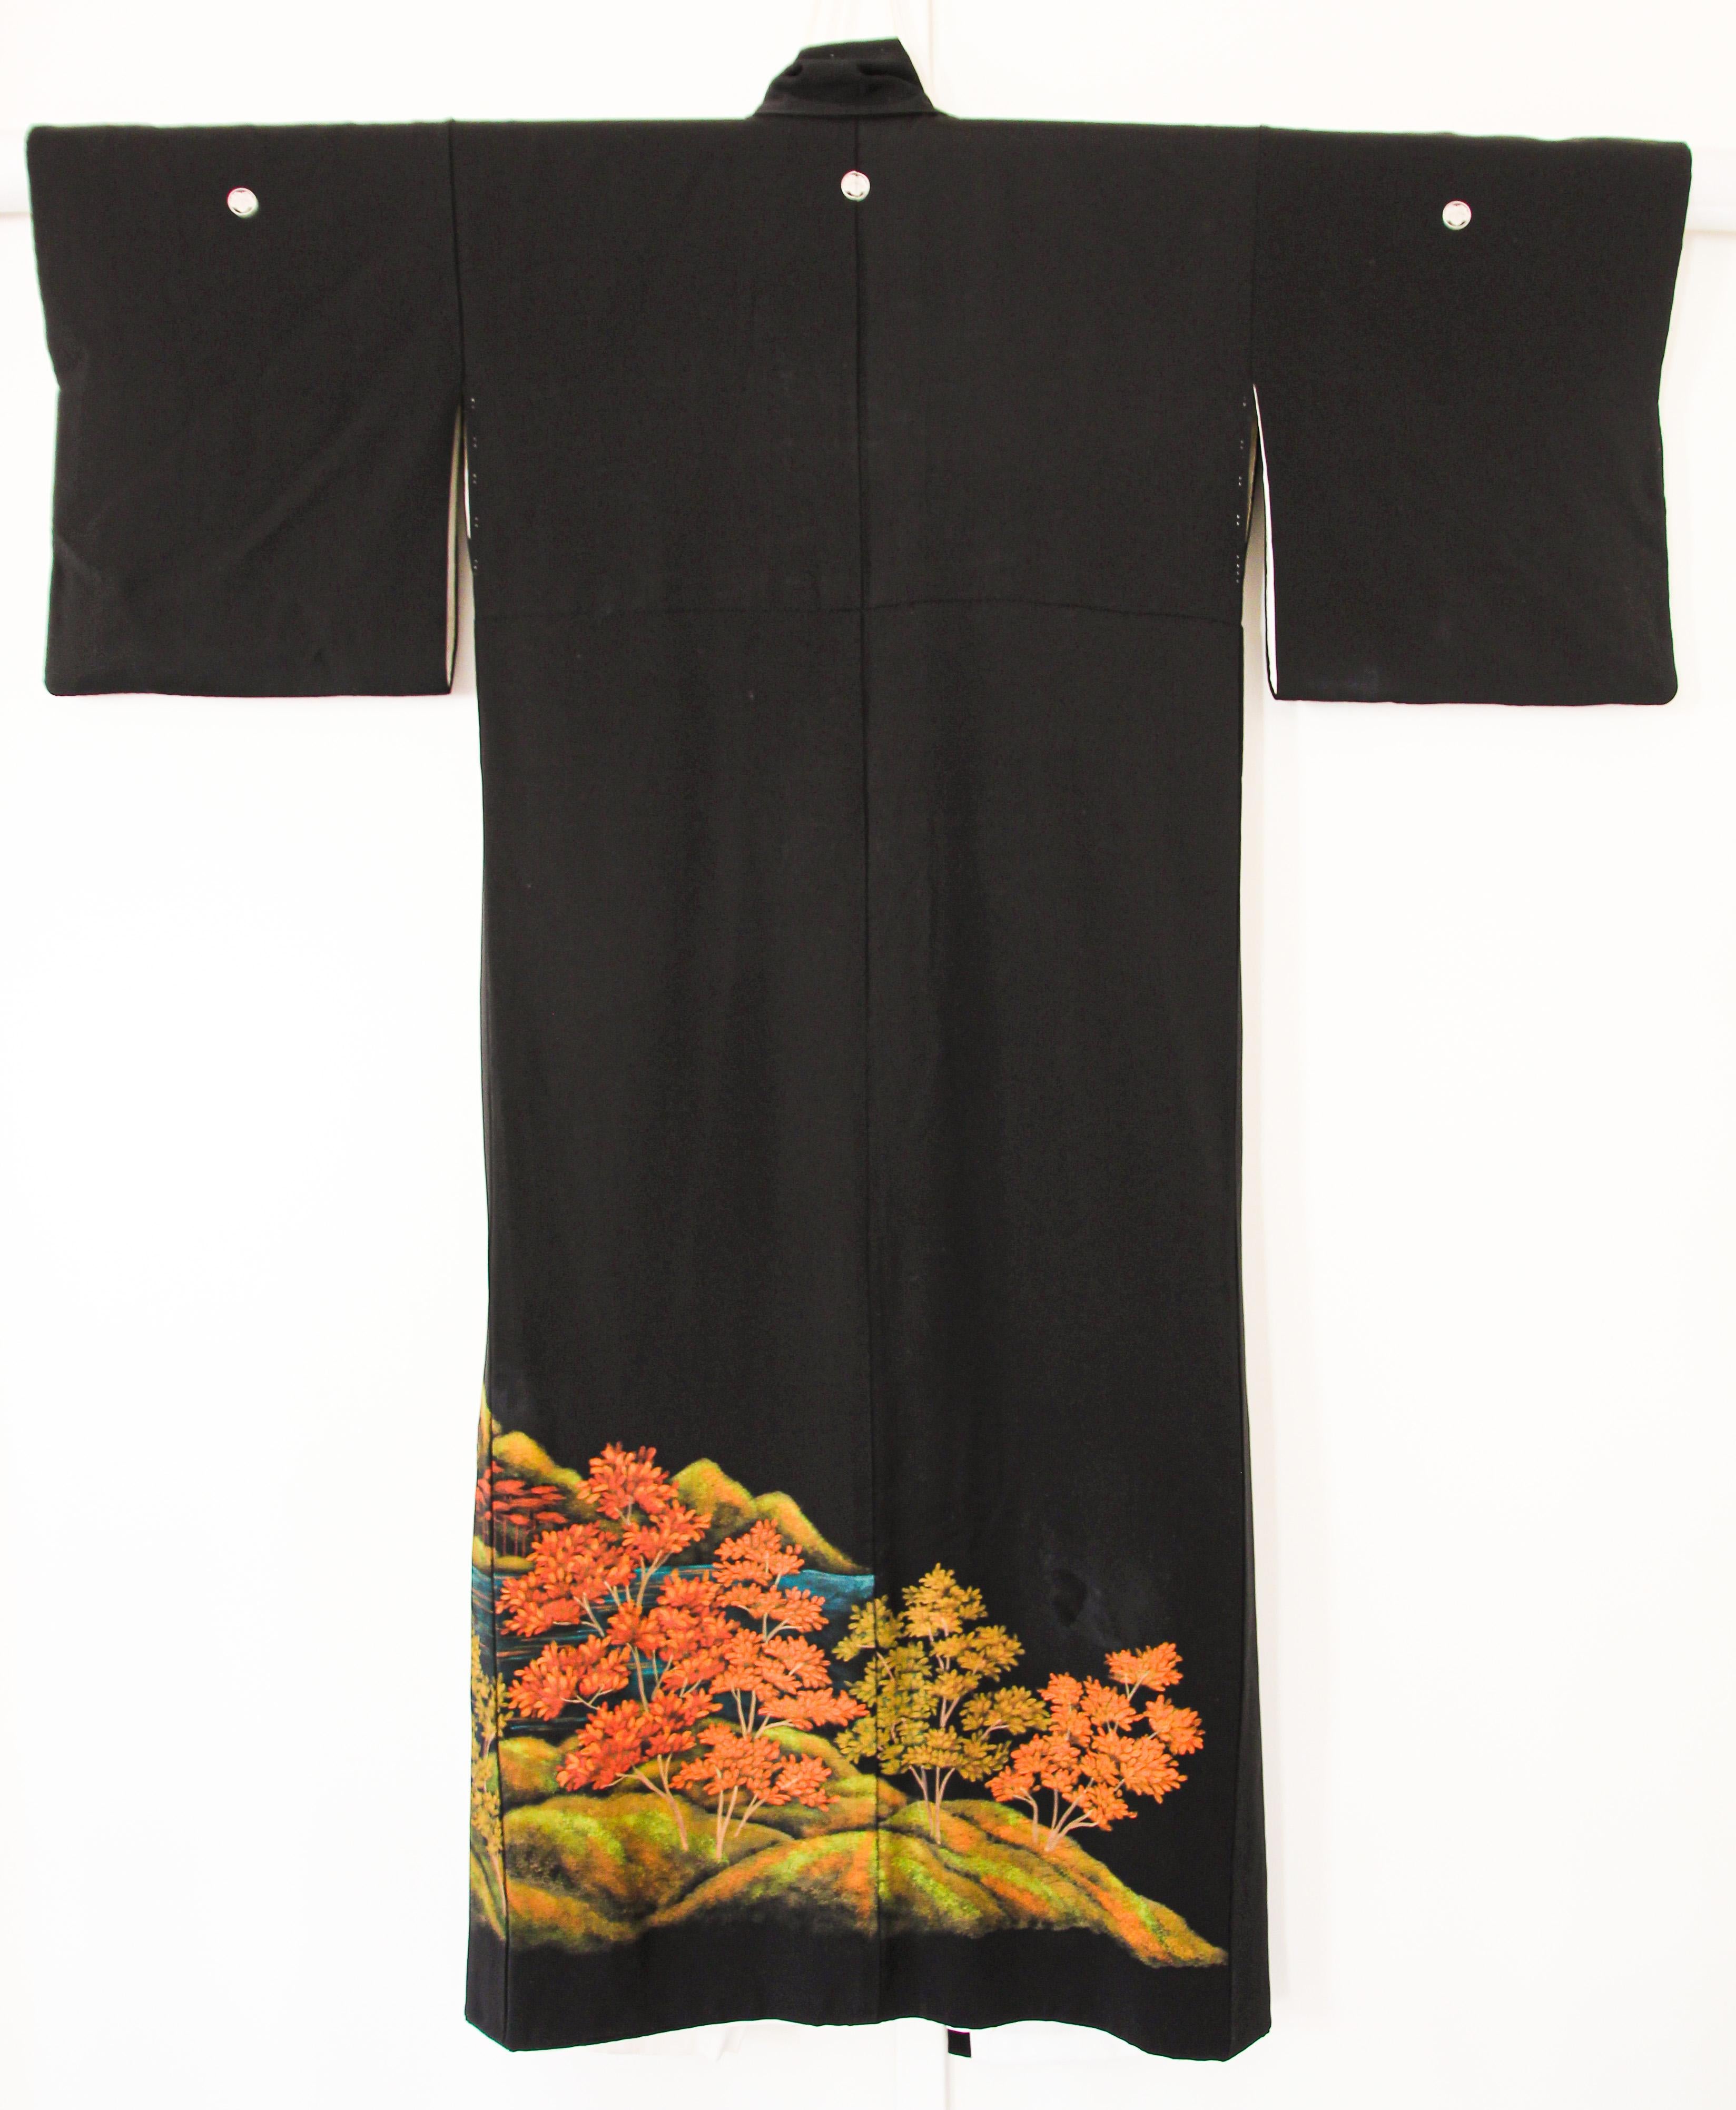 Vintage feiner japanischer schwarzer Seidenkimono. circa 1960er Jahre.
Ein wunderbares Textil für Sammler.
Klassischer schwarzer langer Kimono mit offener Vorderseite,  Innen mit weißem Leinen-Baumwollstoff ausgekleidet.
Ein Seidenkimono aus